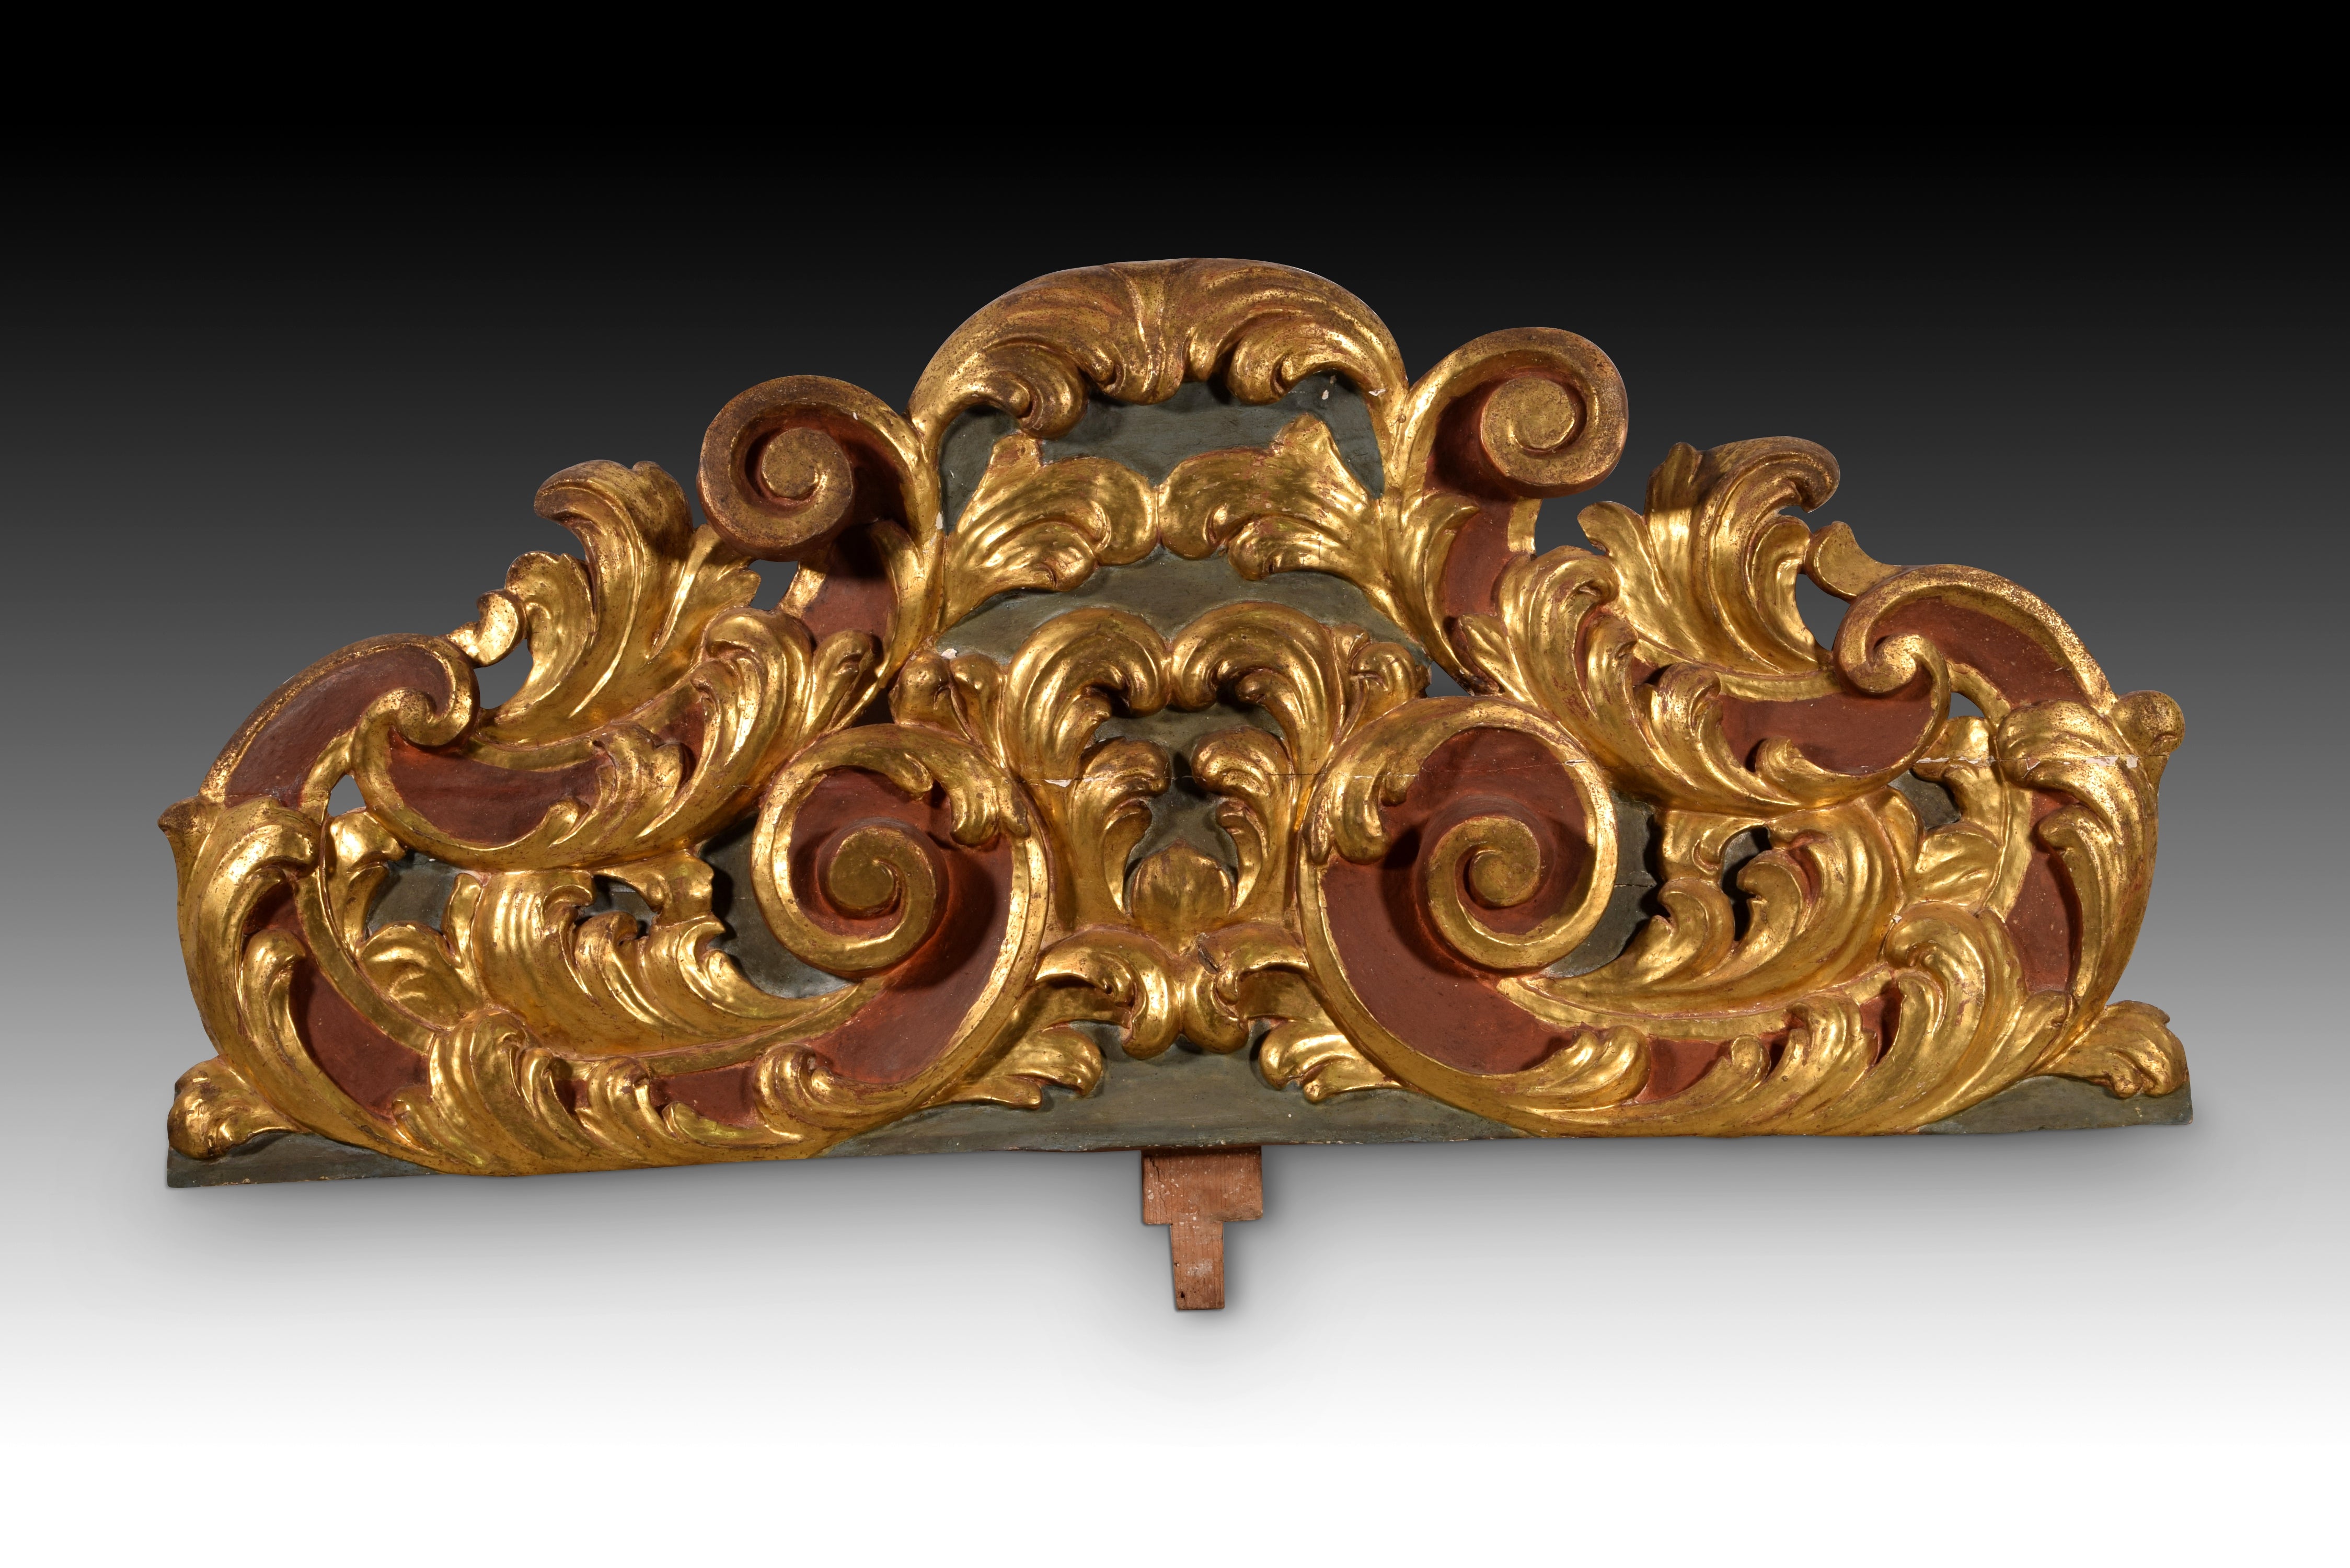 Auktion. Geschnitztes und polychromiertes Holz, 18. Jahrhundert.
Aus geschnitztem, polychromem und vergoldetem Holz, verziert mit einem leichten Relief auf der Basis von 